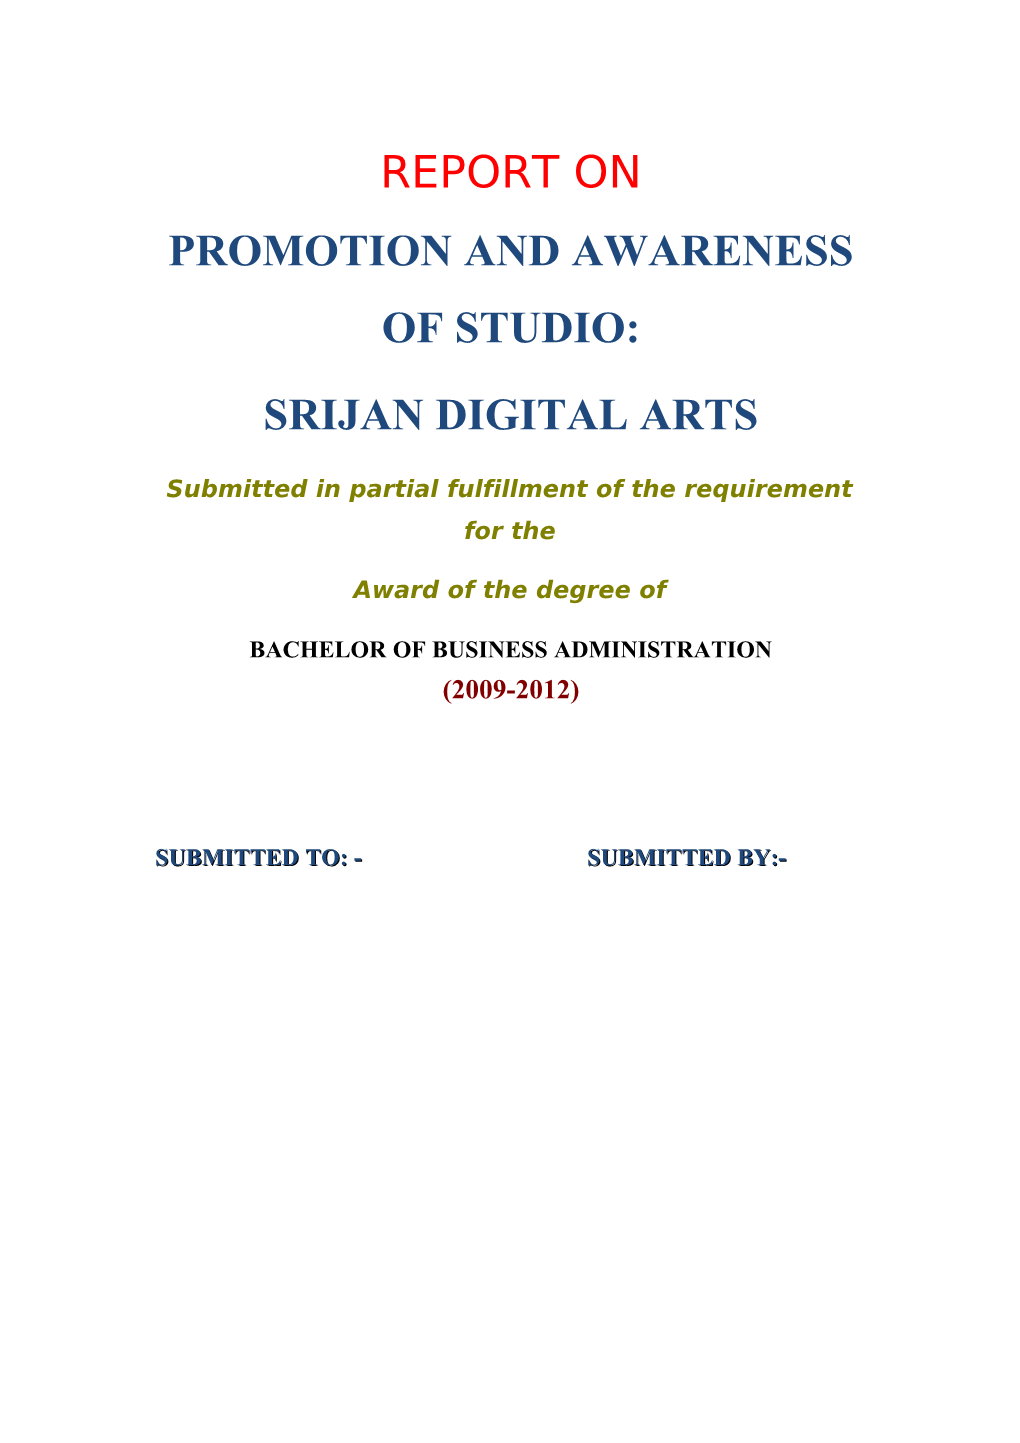 Srijan Digital Arts